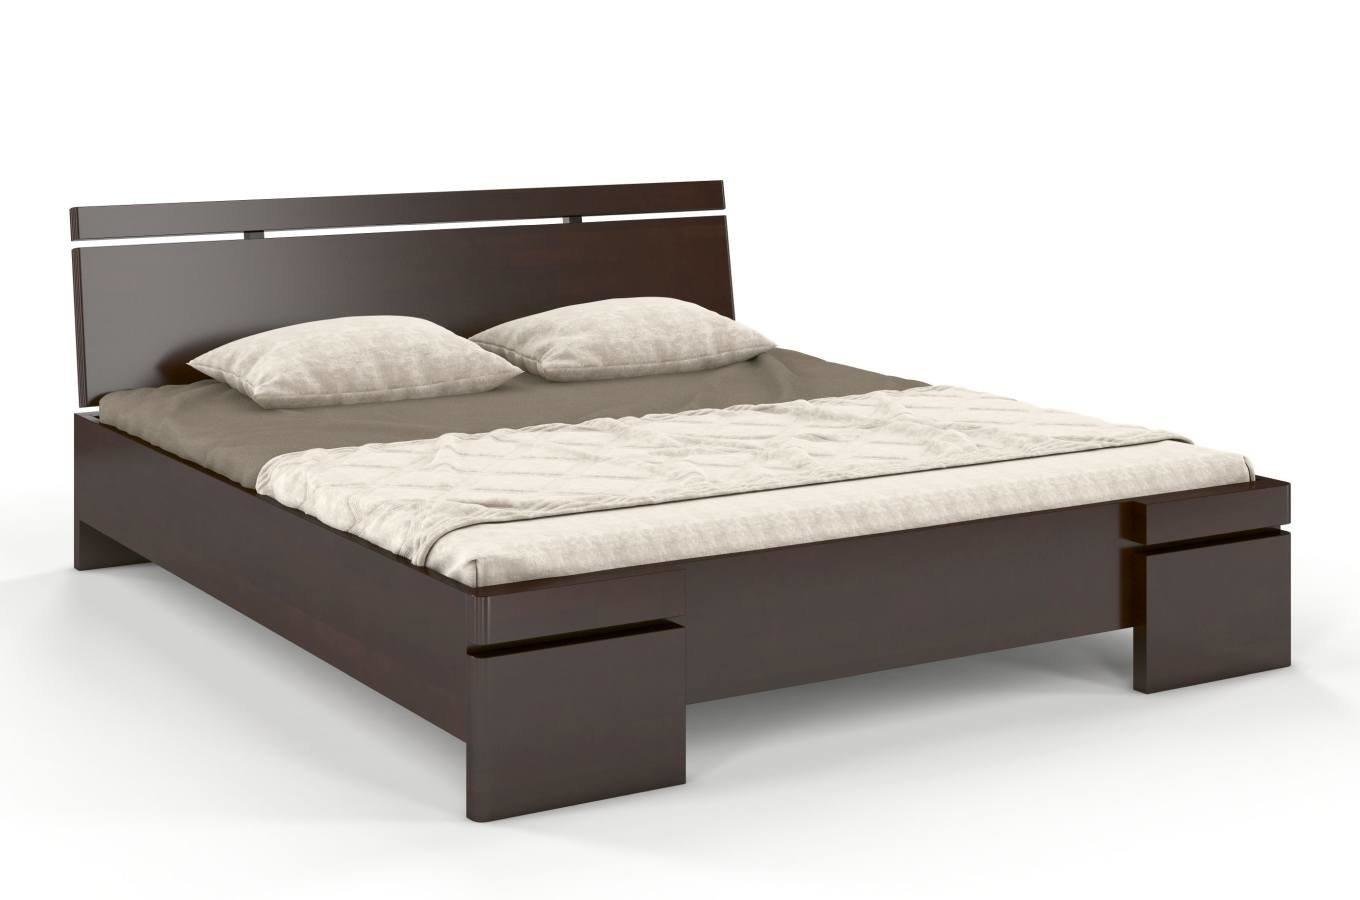 Łóżko drewniane bukowe Skandica SPARTA Maxi & Long / 140x220 cm, kolor palisander